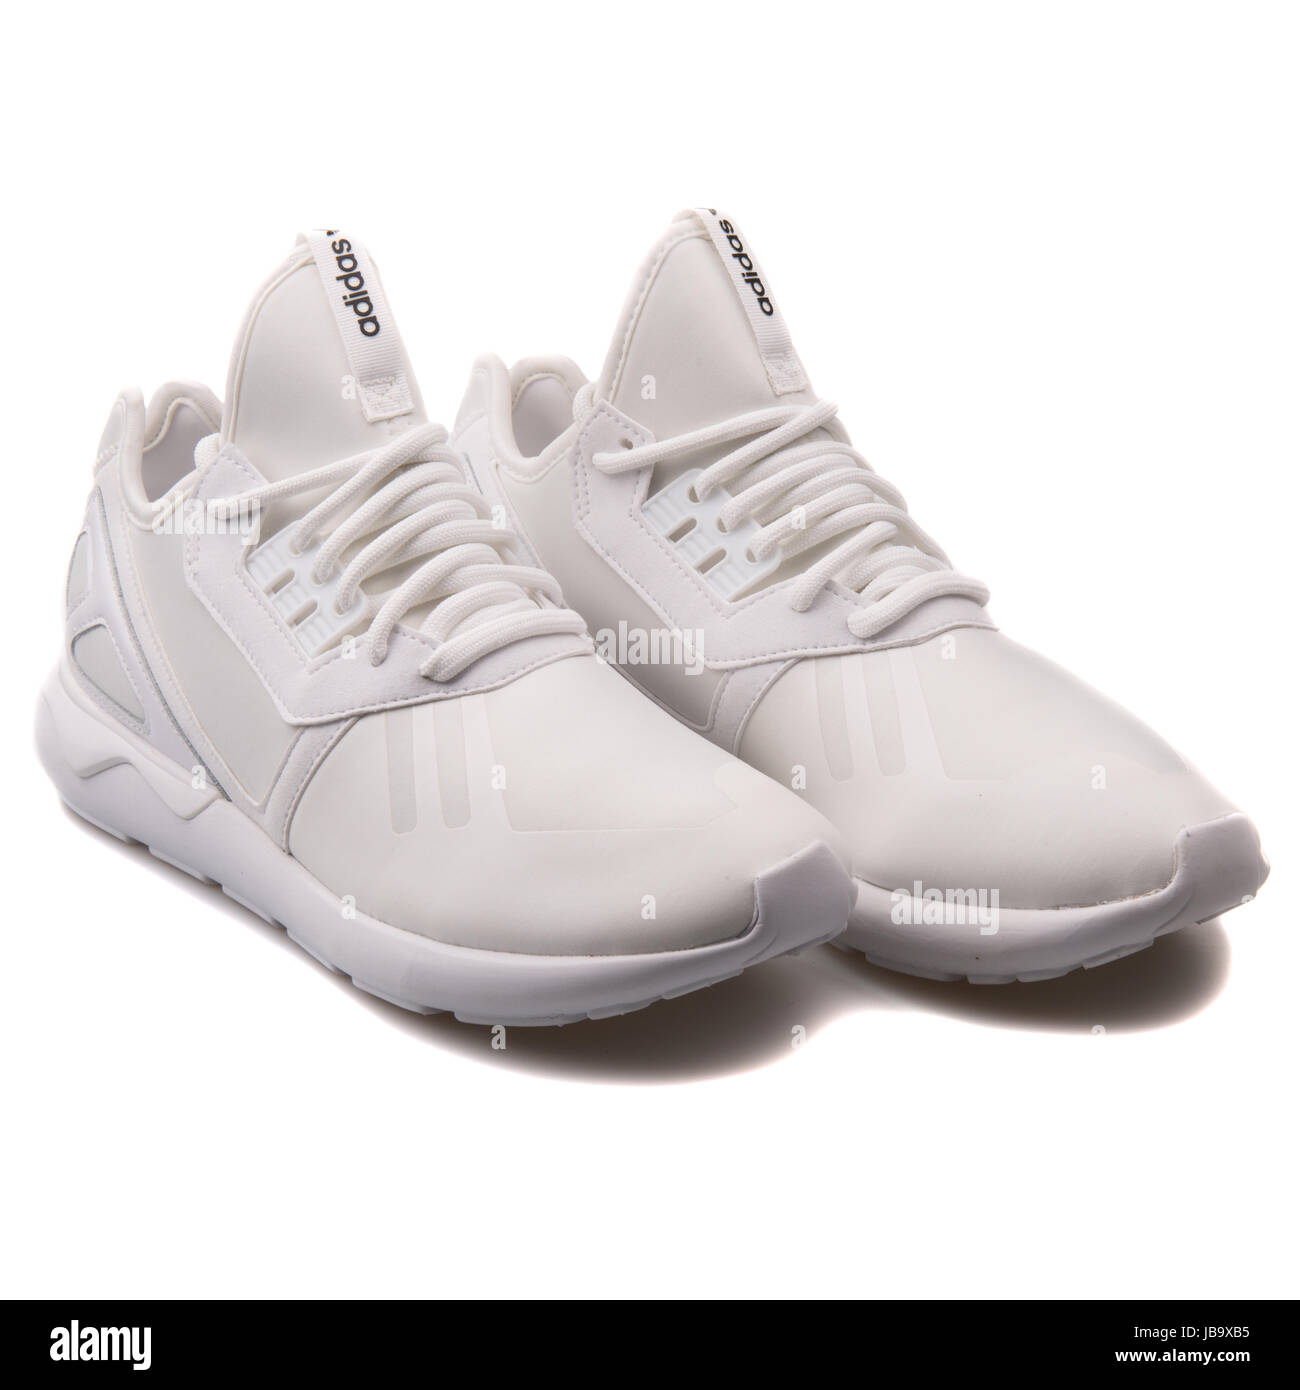 kom over alliance der ovre Adidas Tubular Runner White Men's Running Shoes - S83141 Stock Photo - Alamy